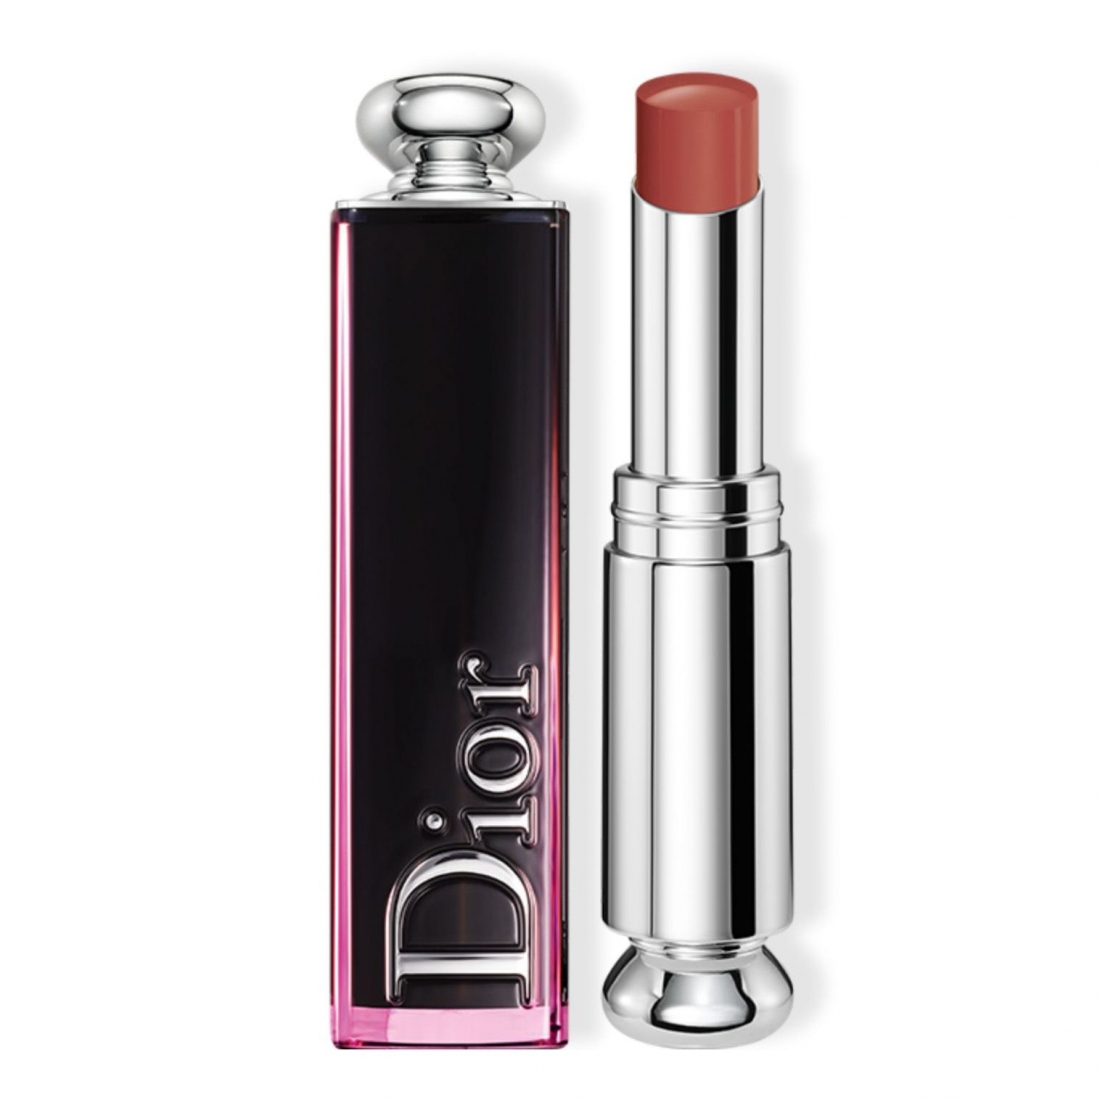 Rouge à Lèvres 'Dior Addict Lacquer Stick' - 524 Coolista 3.5 g